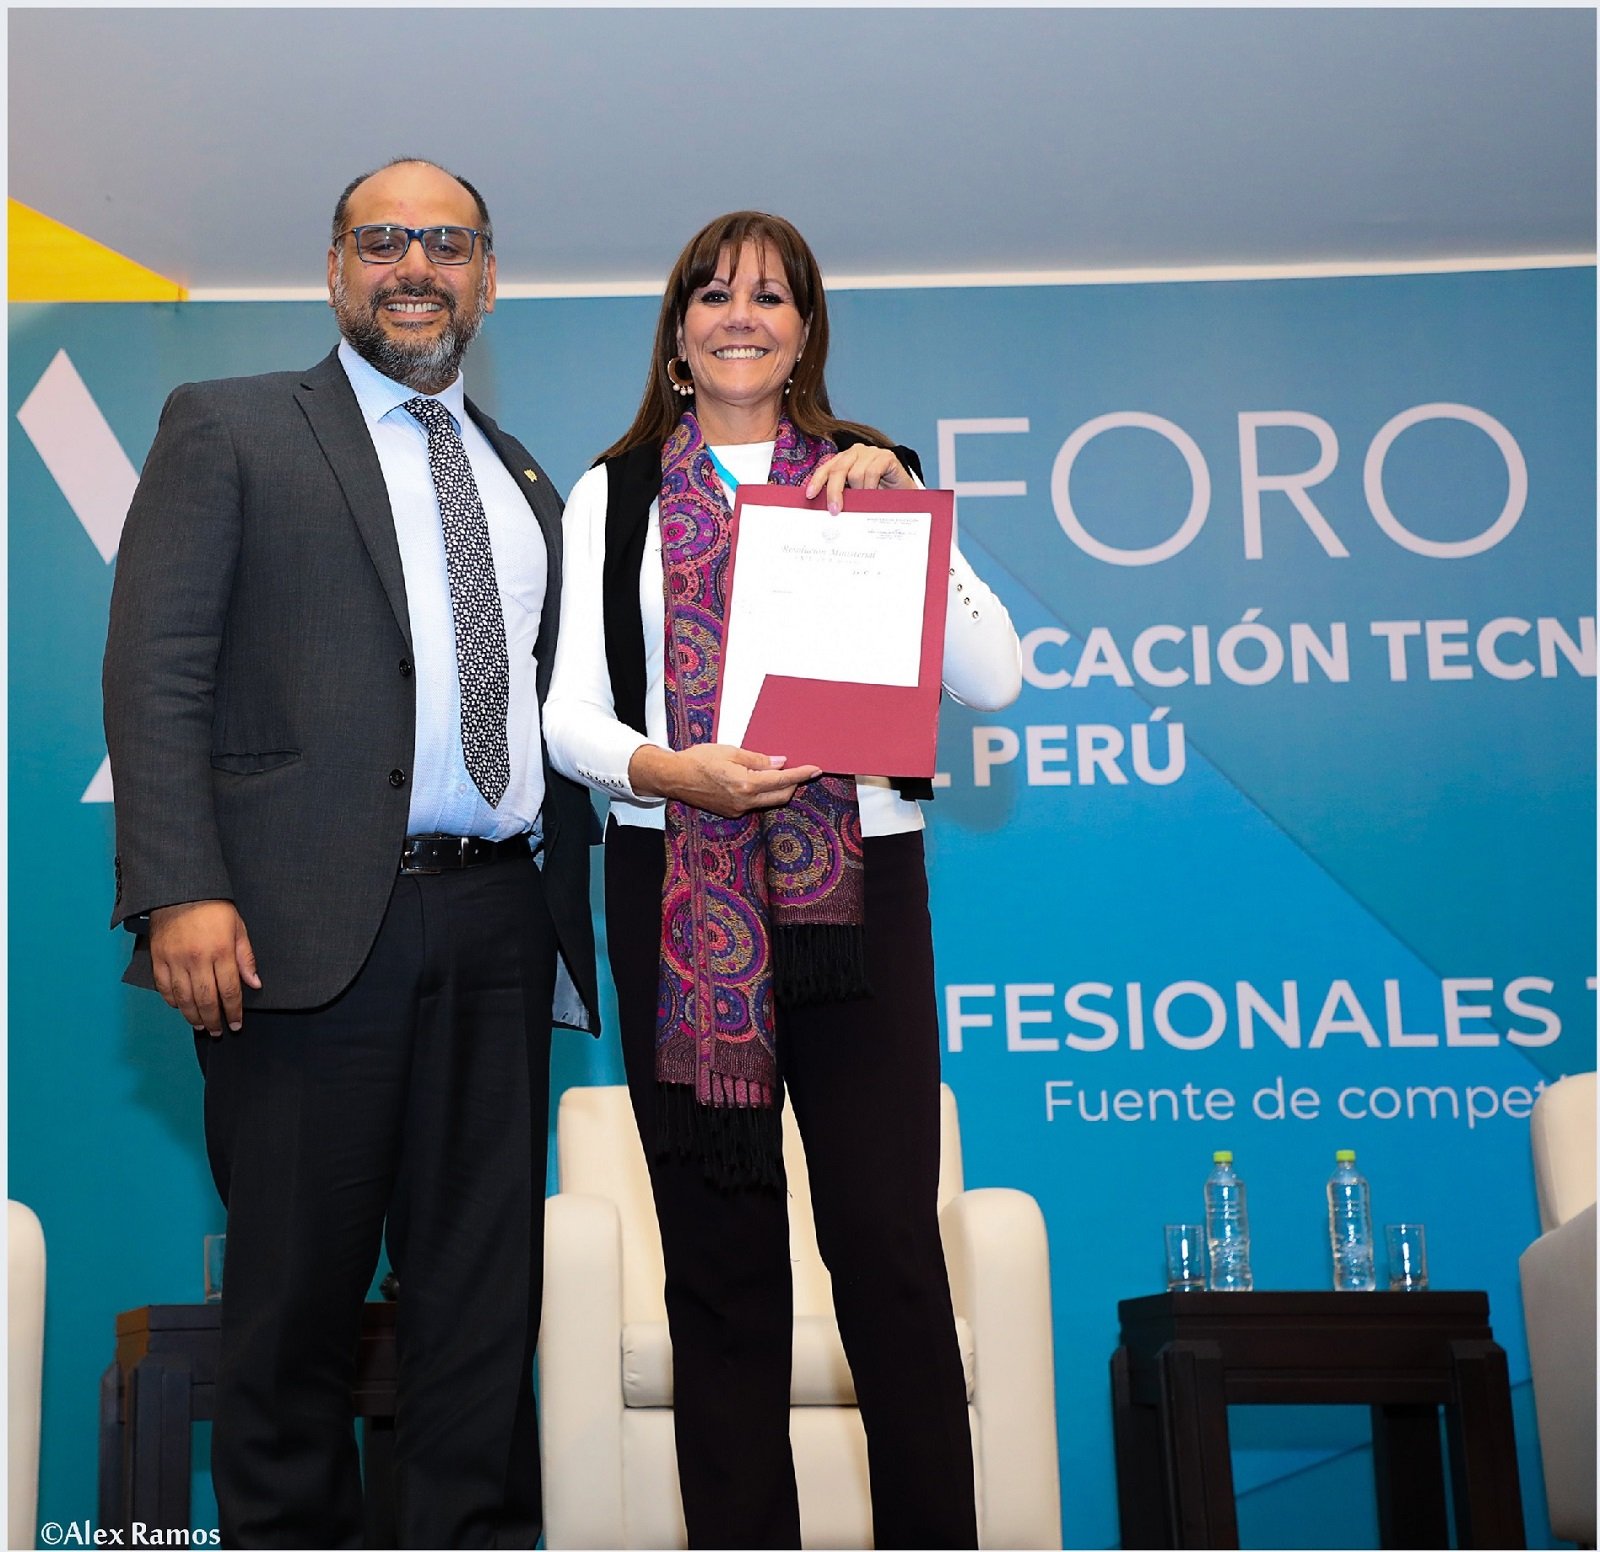 MINEDU grants licensure to the Le Cordon Bleu Peru Institute